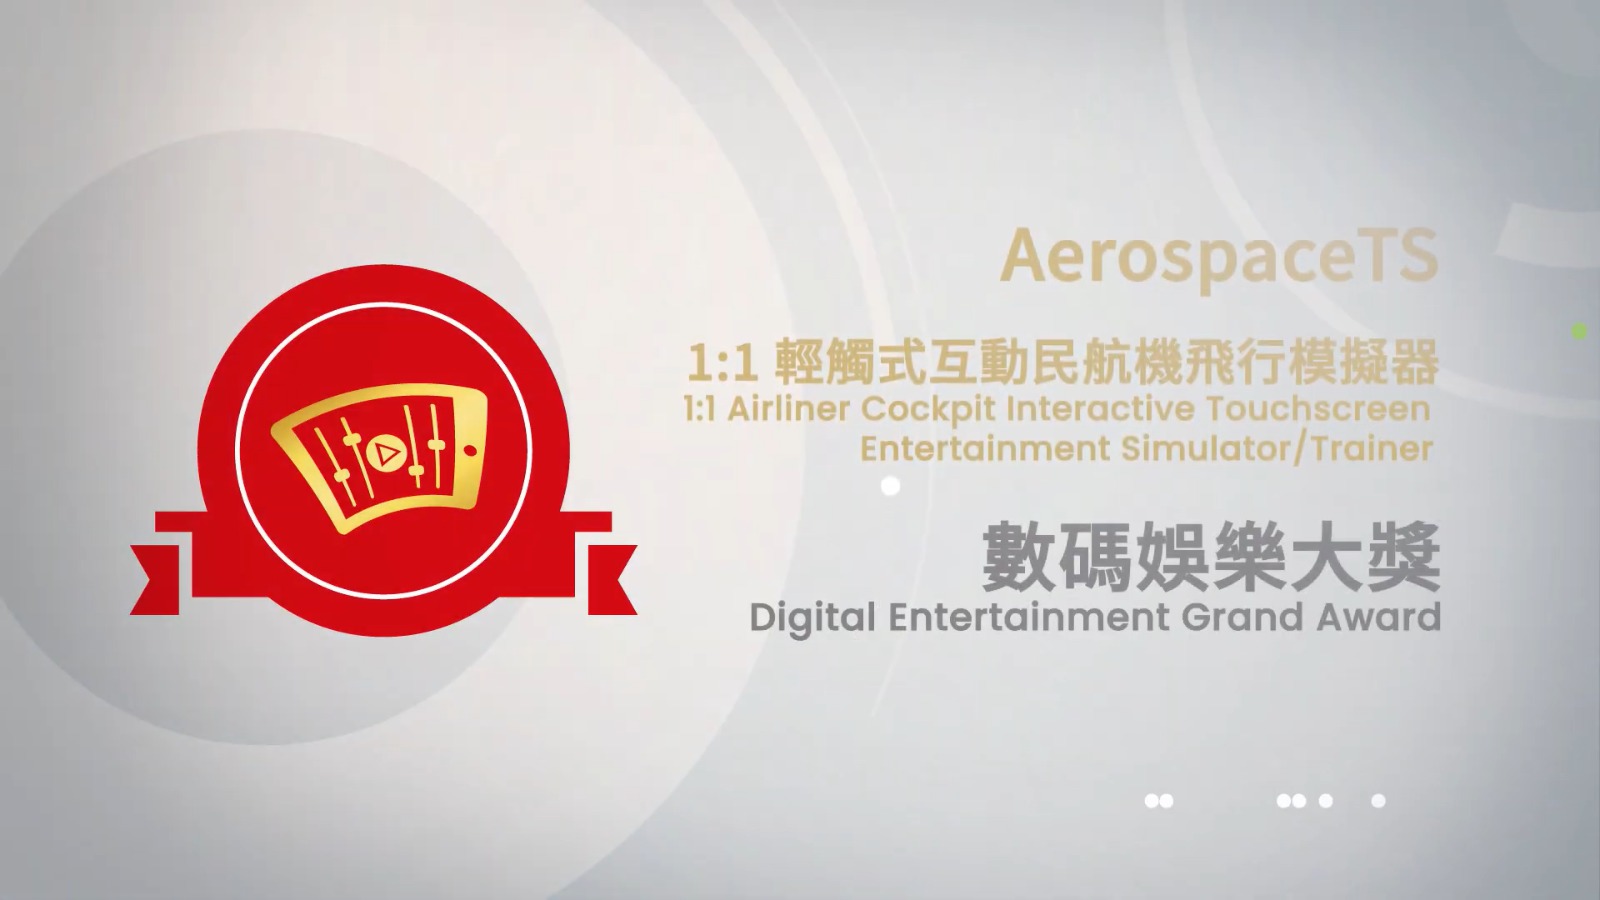 進入2022香港資訊及通訊科技獎 大獎小故事 數碼娛樂大獎作品 - 1:1 輕觸式互動民航機飛行模擬器